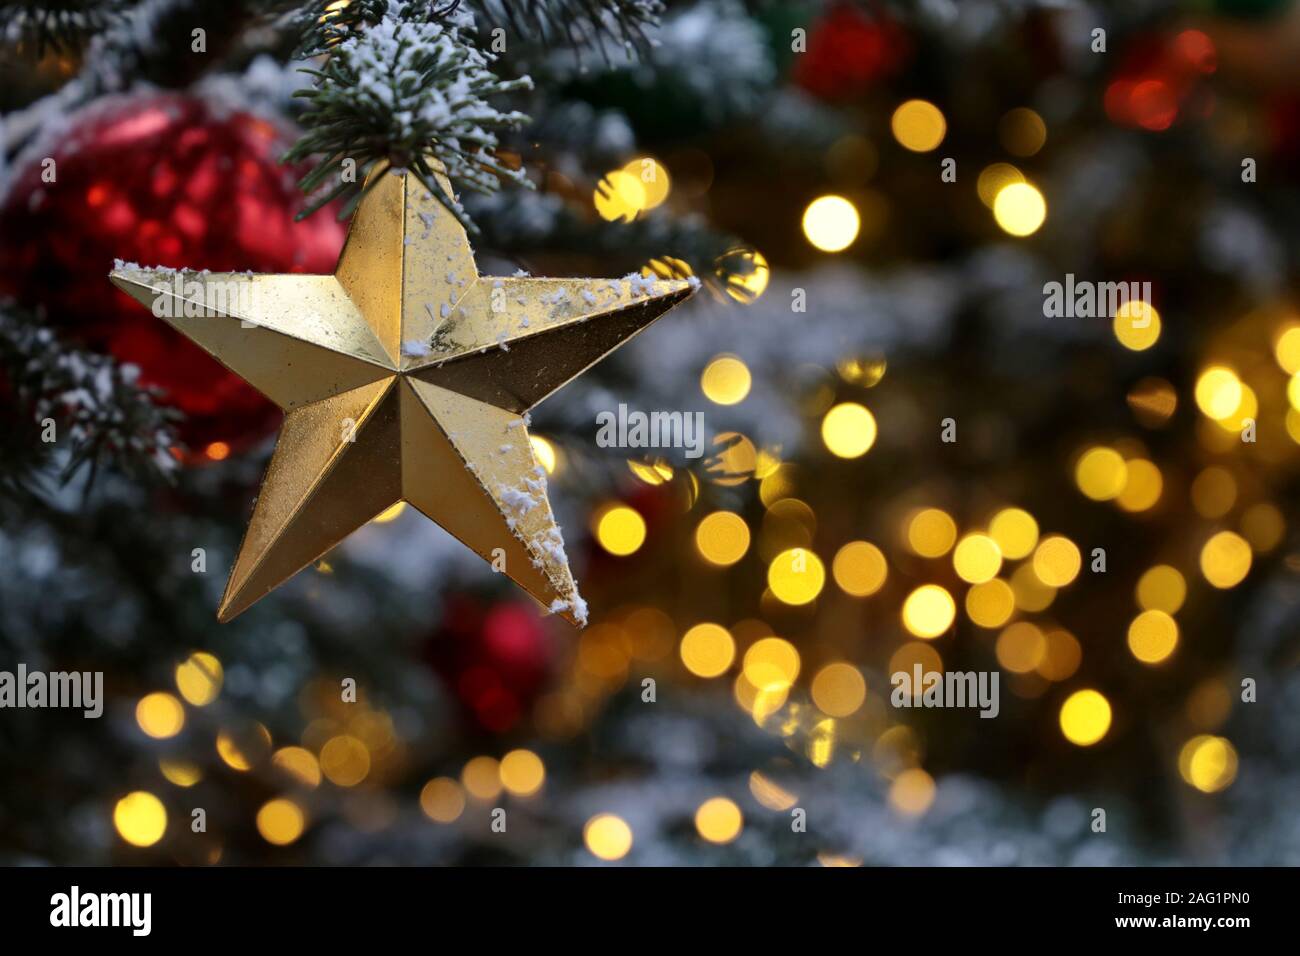 L'étoile de Noël sur une des branches de sapin sur fond de fête feux d'or, l'éclairage de nuit. Nouvel An des arbres avec des décorations, magie d'une maison de vacances Banque D'Images